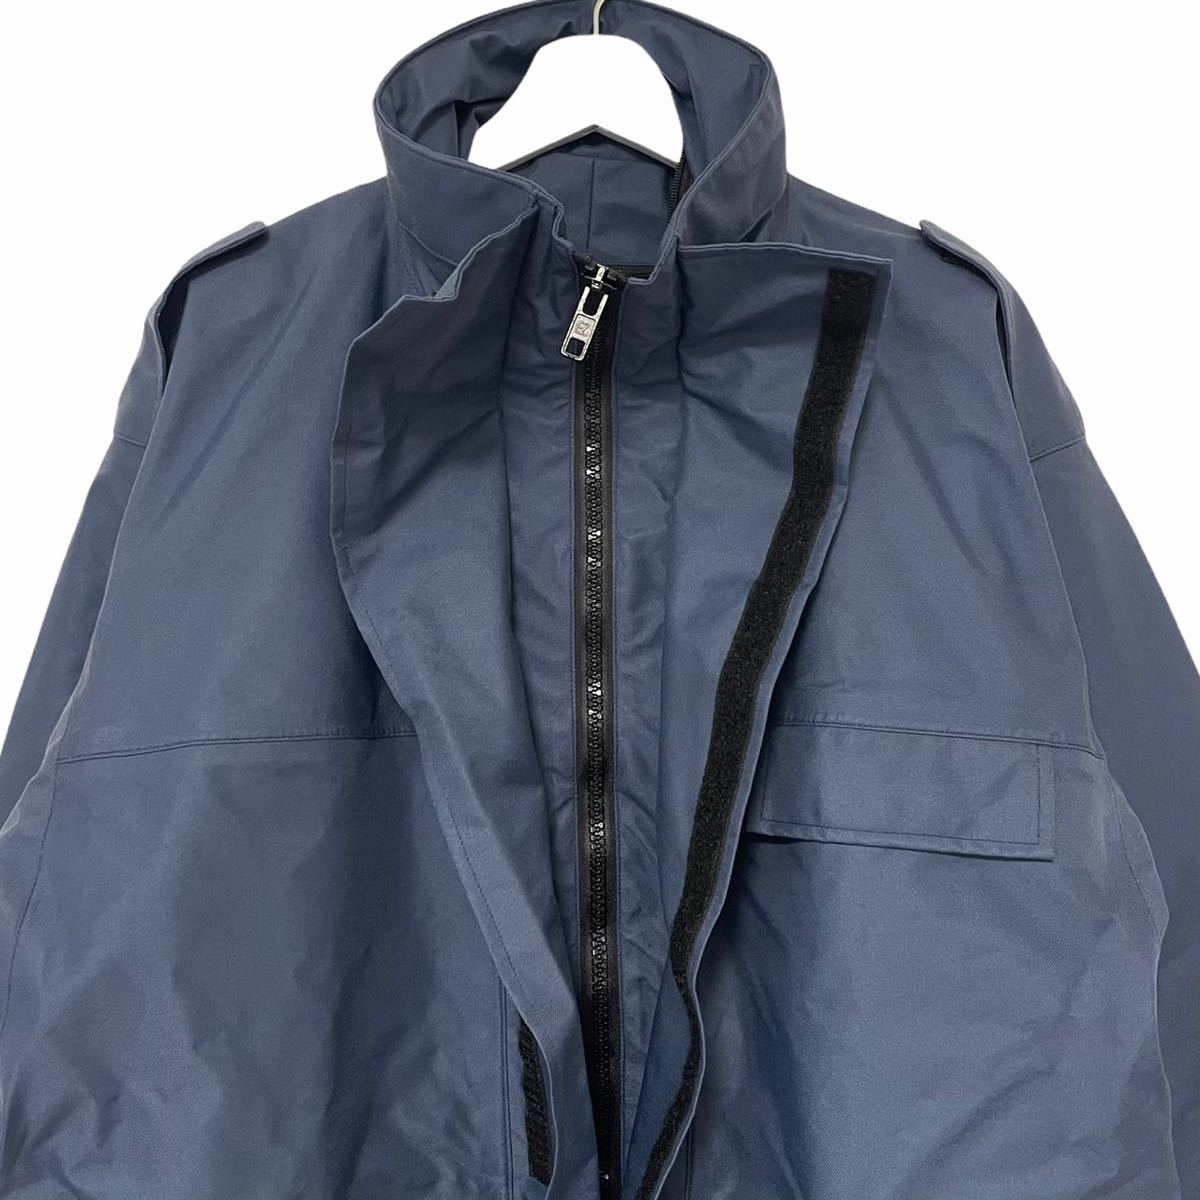 売る デッドストックイギリス空軍RAFwet weather jacket ミリタリージャケット